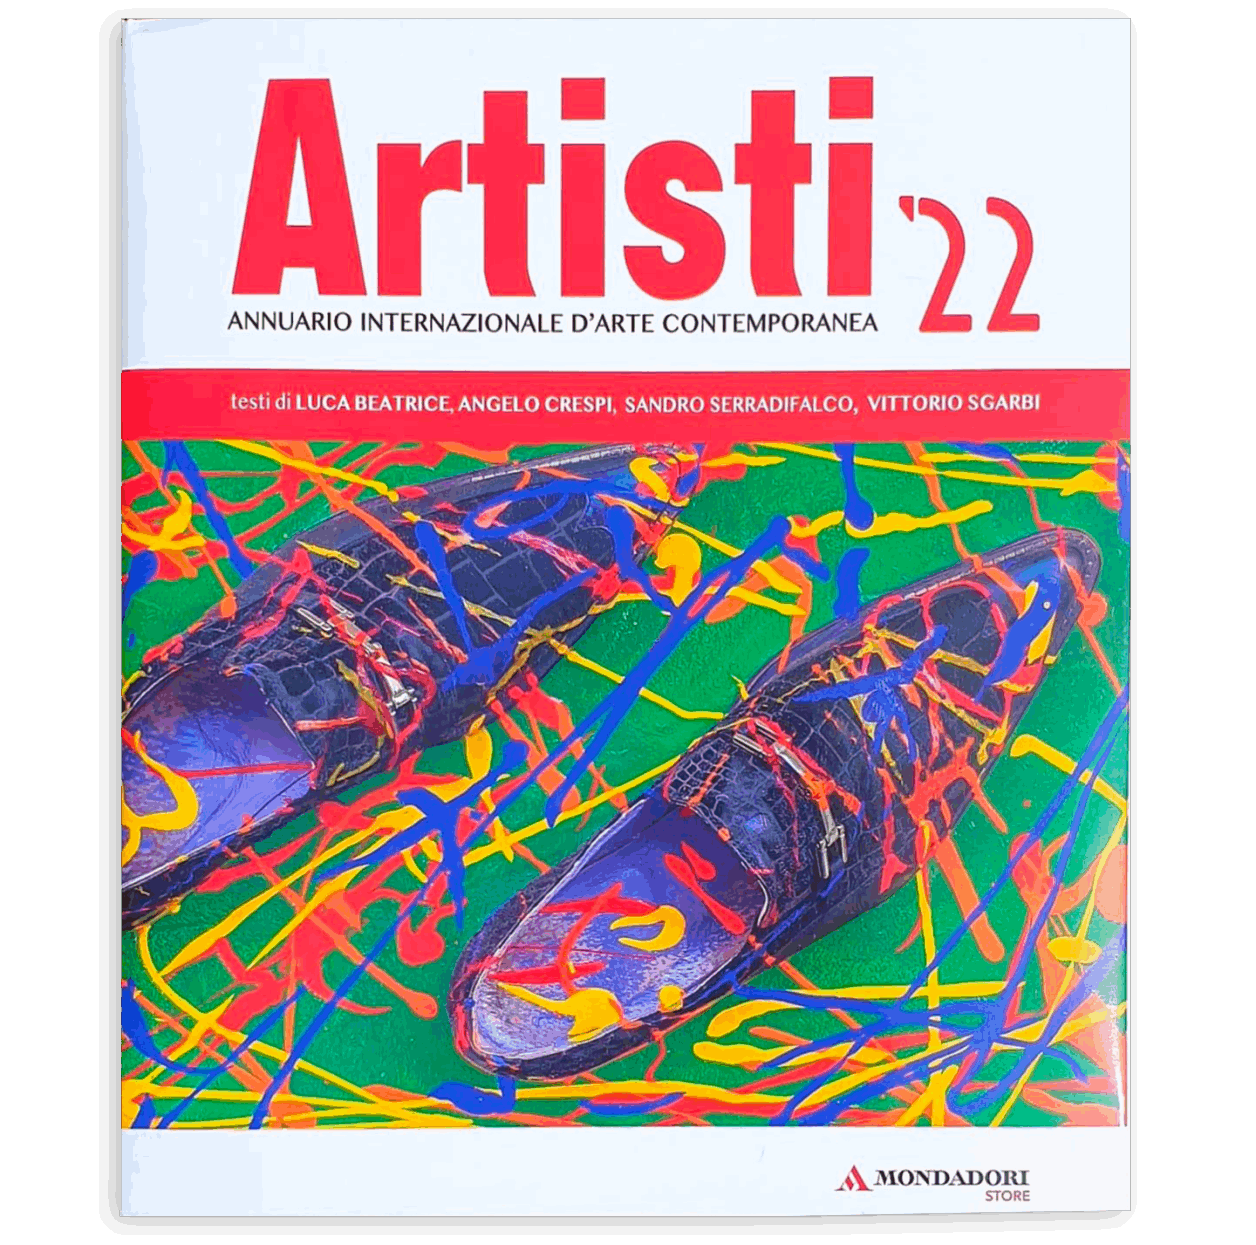 Artisti 22 - Annuario Internazionale d'Arte Contemporanea